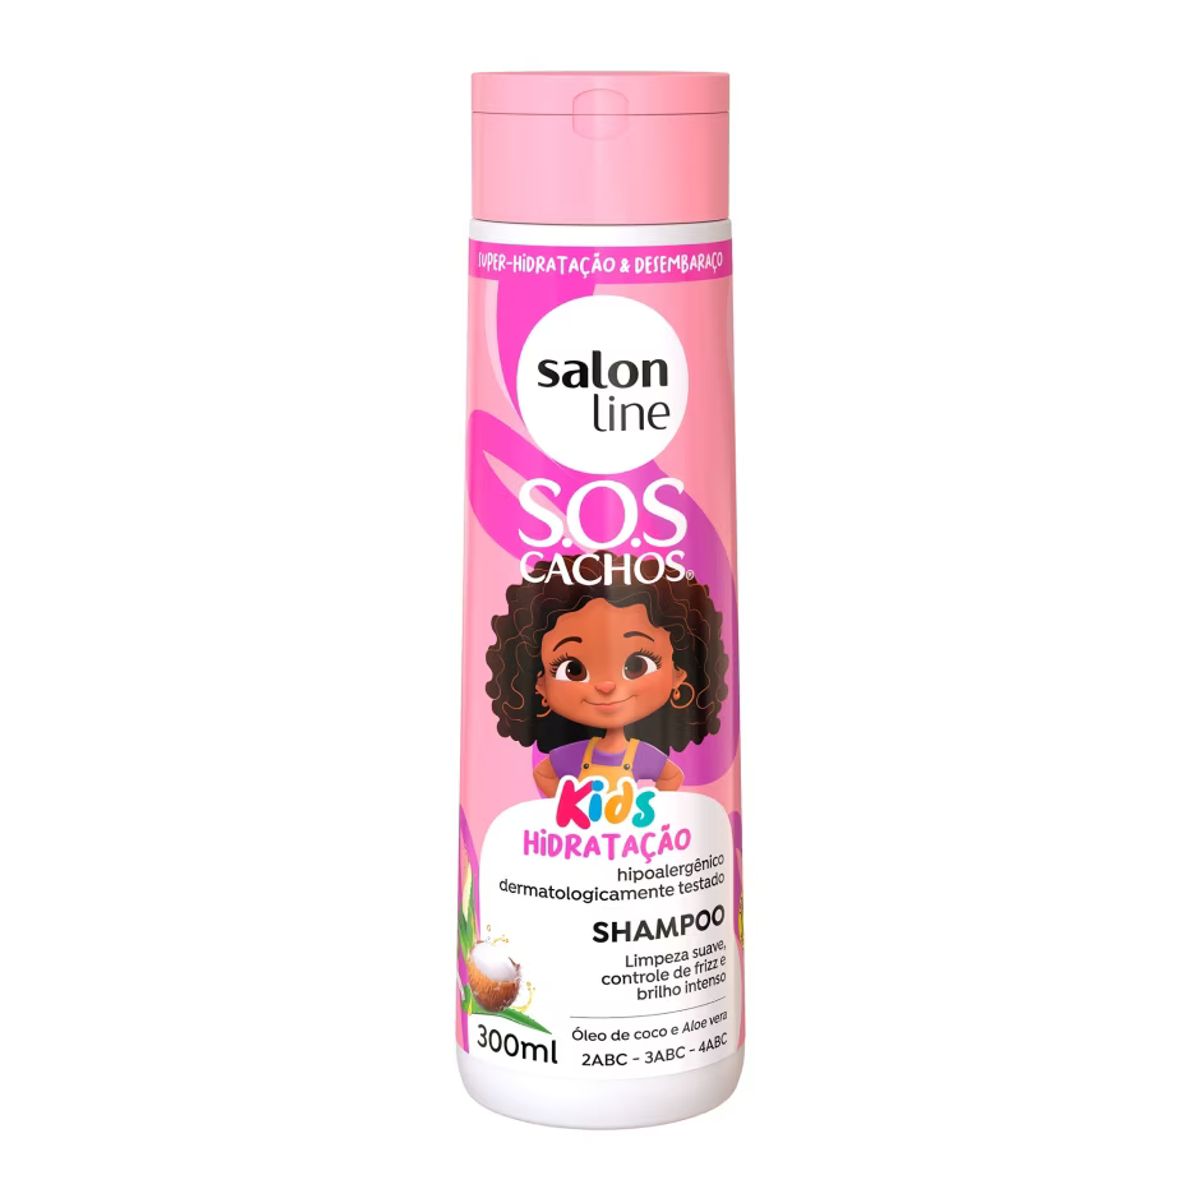 Shampoo Salon Line SOS Cachos Kids Hidratação 300ml image number 0